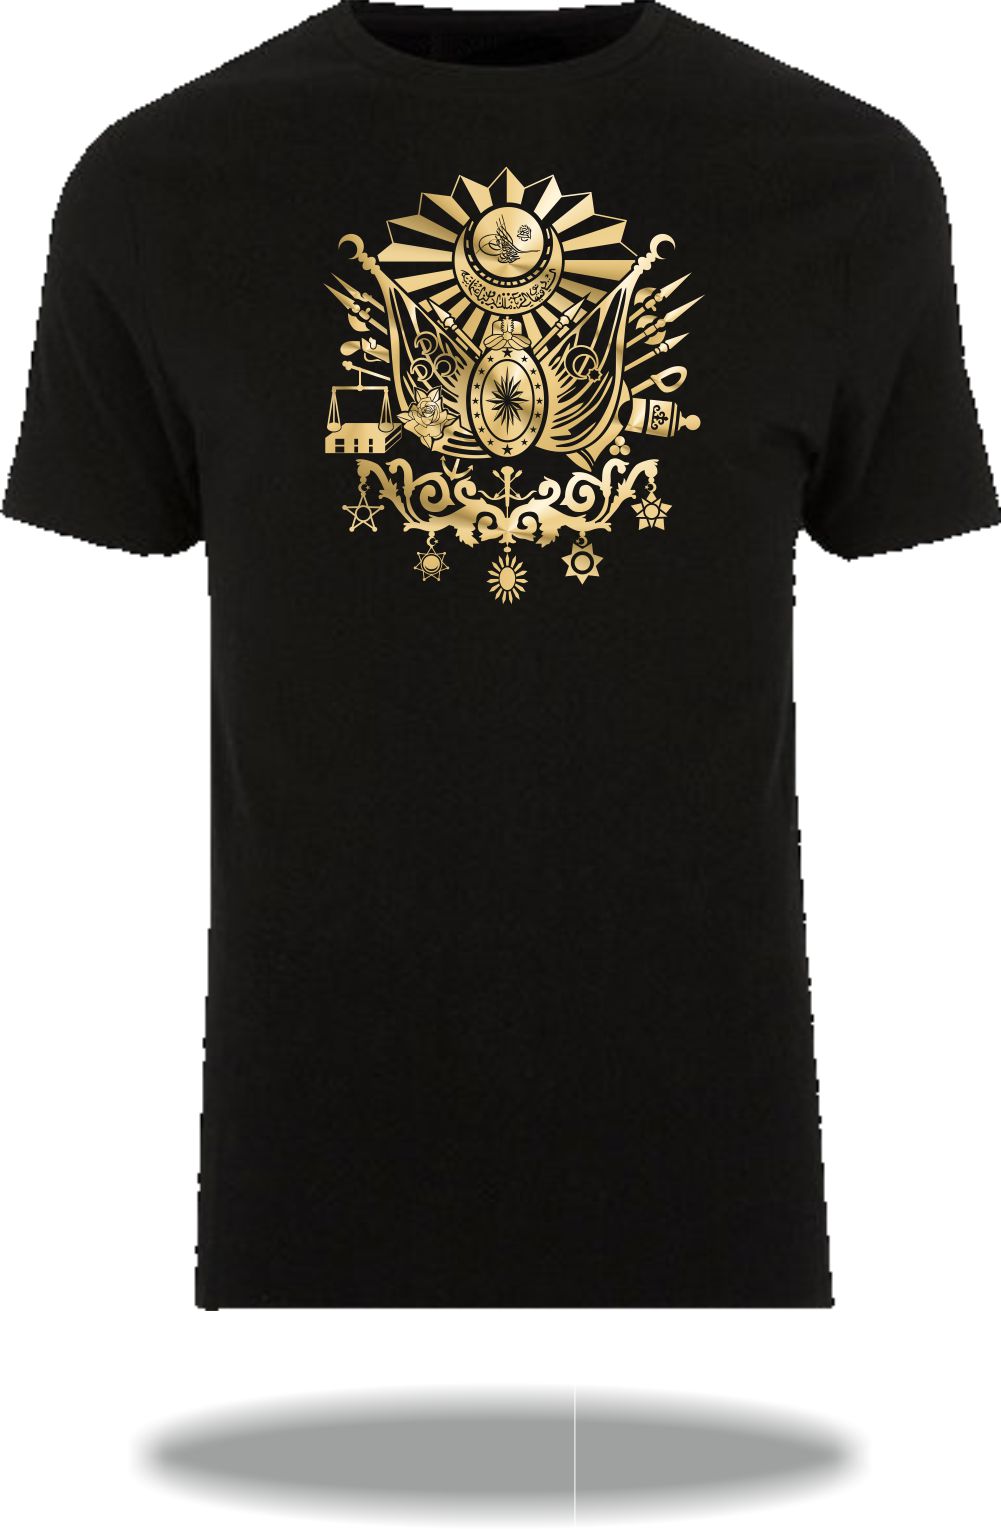 T-Shirt Wappen Osmanisches Reich / Osmanli Armasi